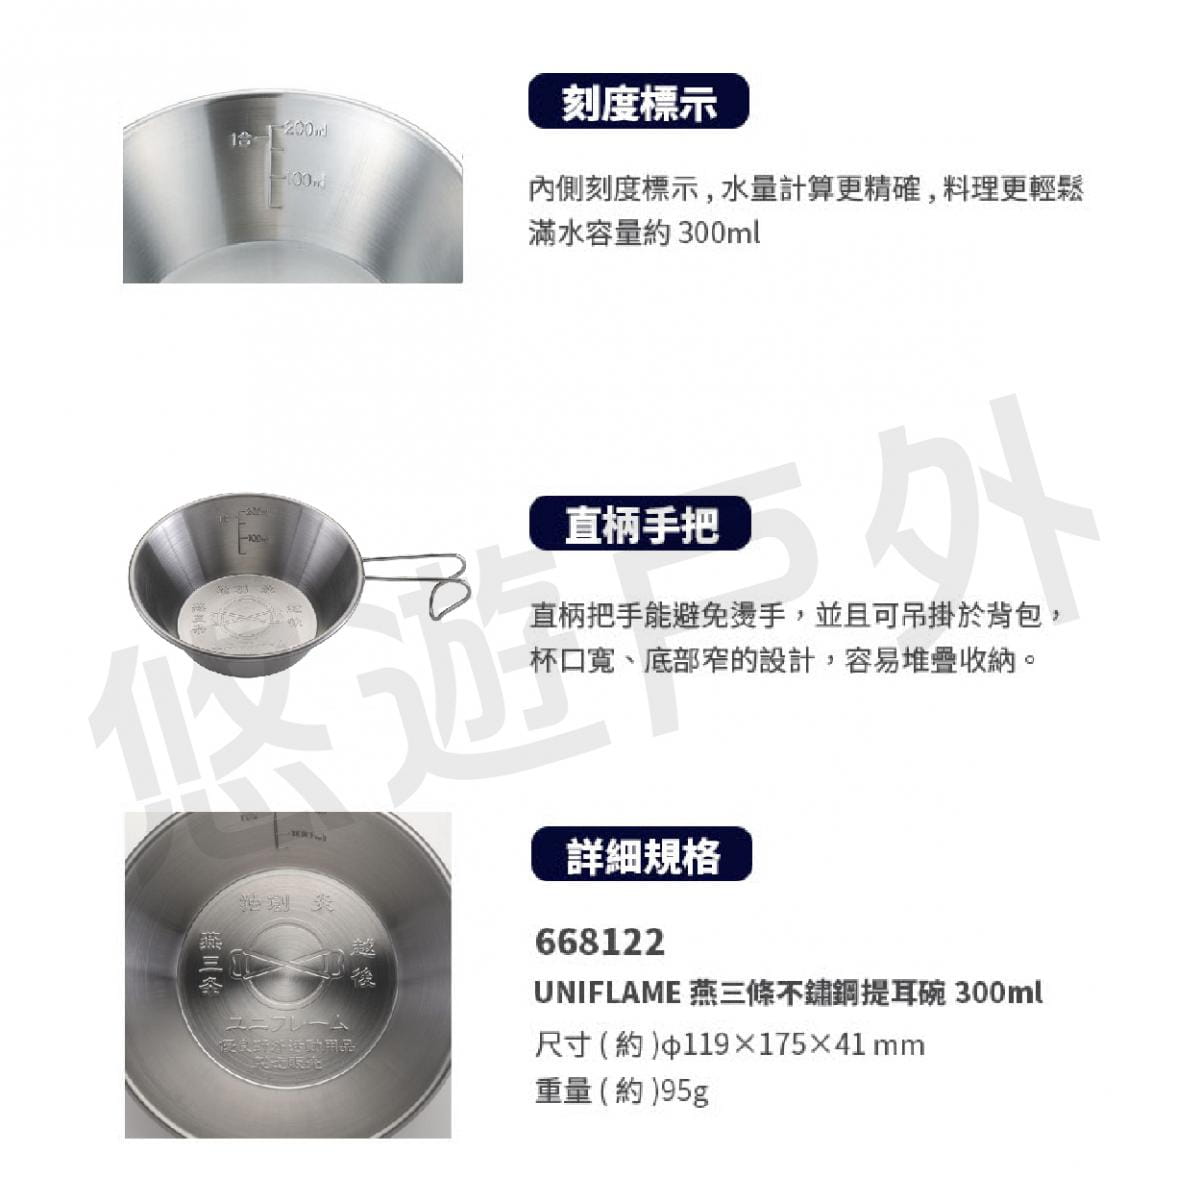 【UNIFLAME】U667750 日本 燕三條不鏽鋼提耳碗420ml 燕三條製 不銹鋼 提耳碗 2